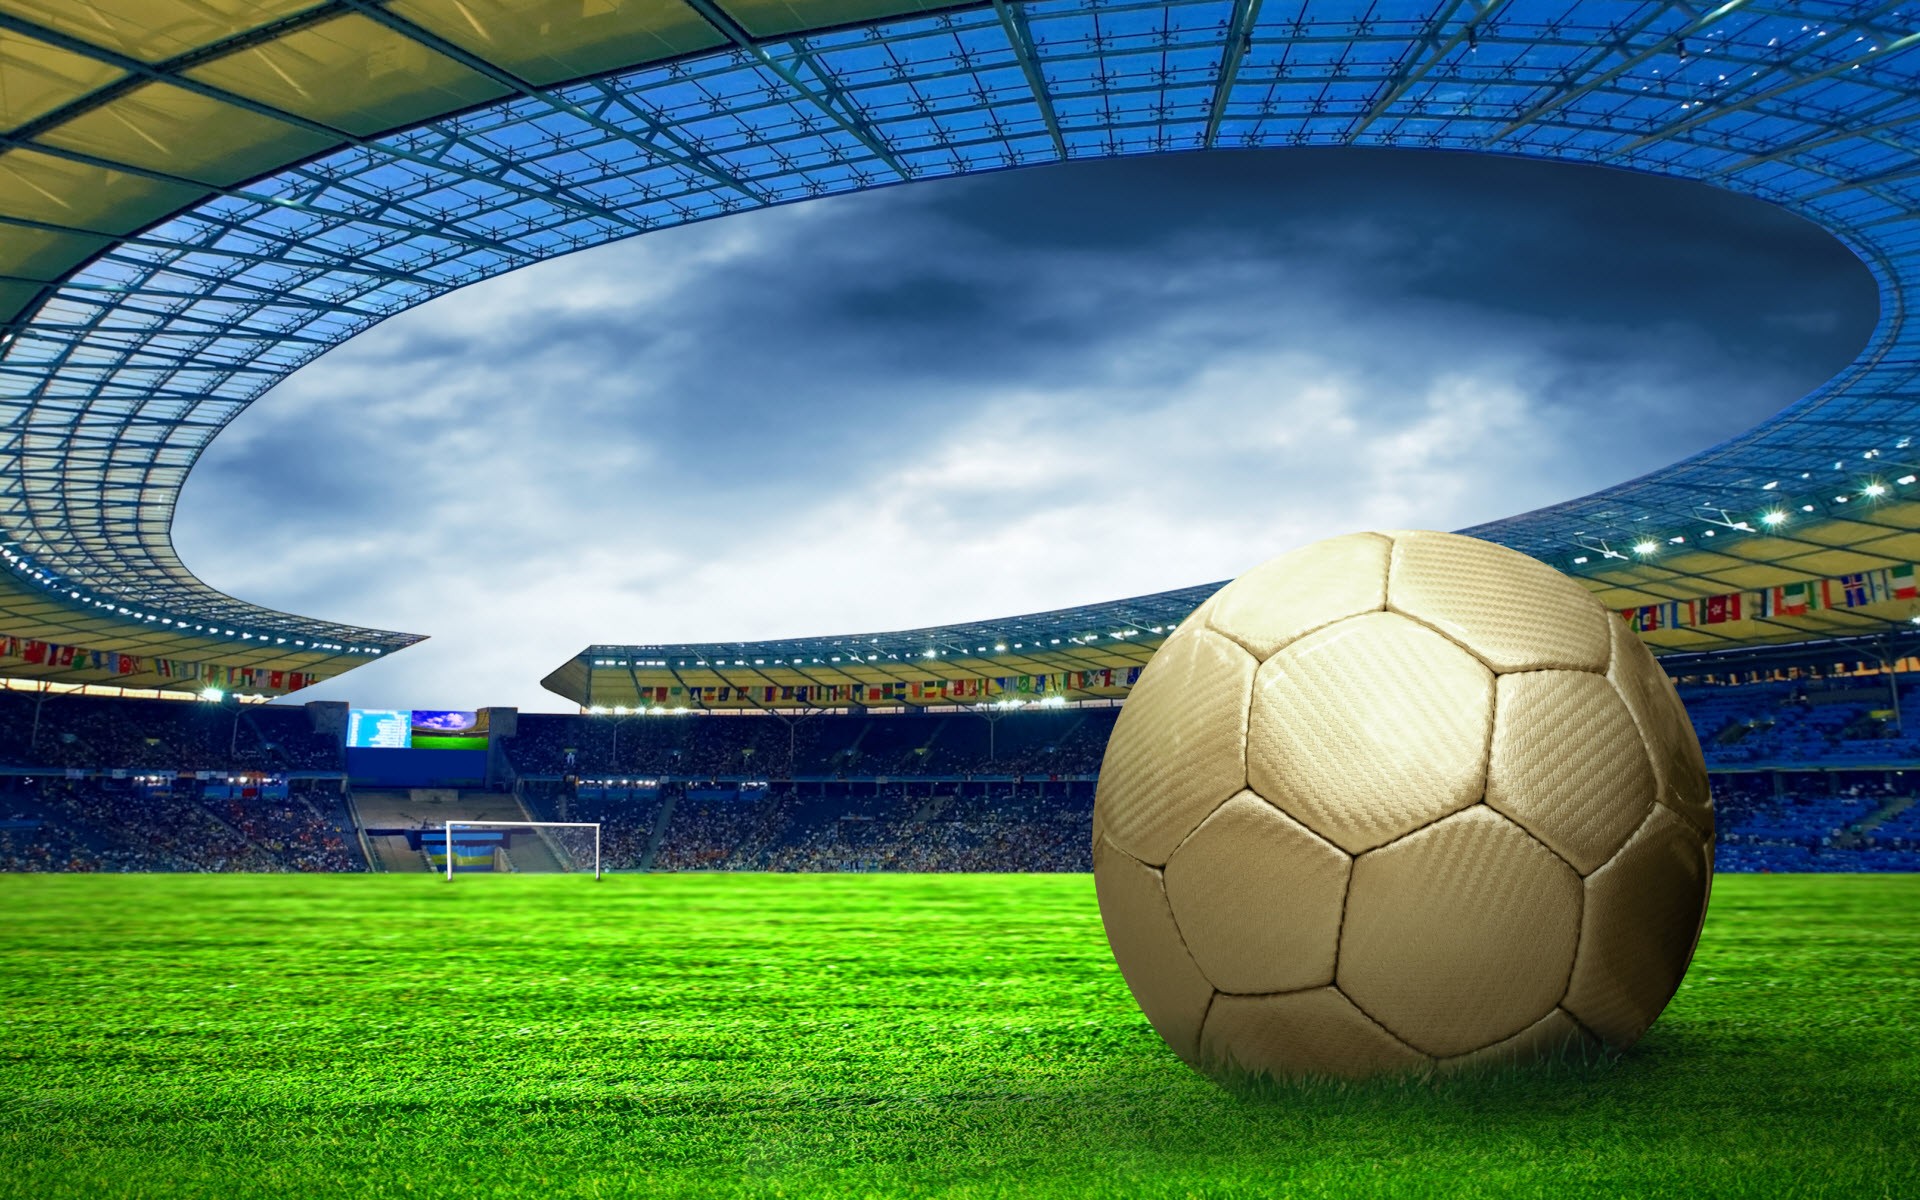 futebol wallpaper,sport venue,football,soccer ball,soccer specific stadium,stadium